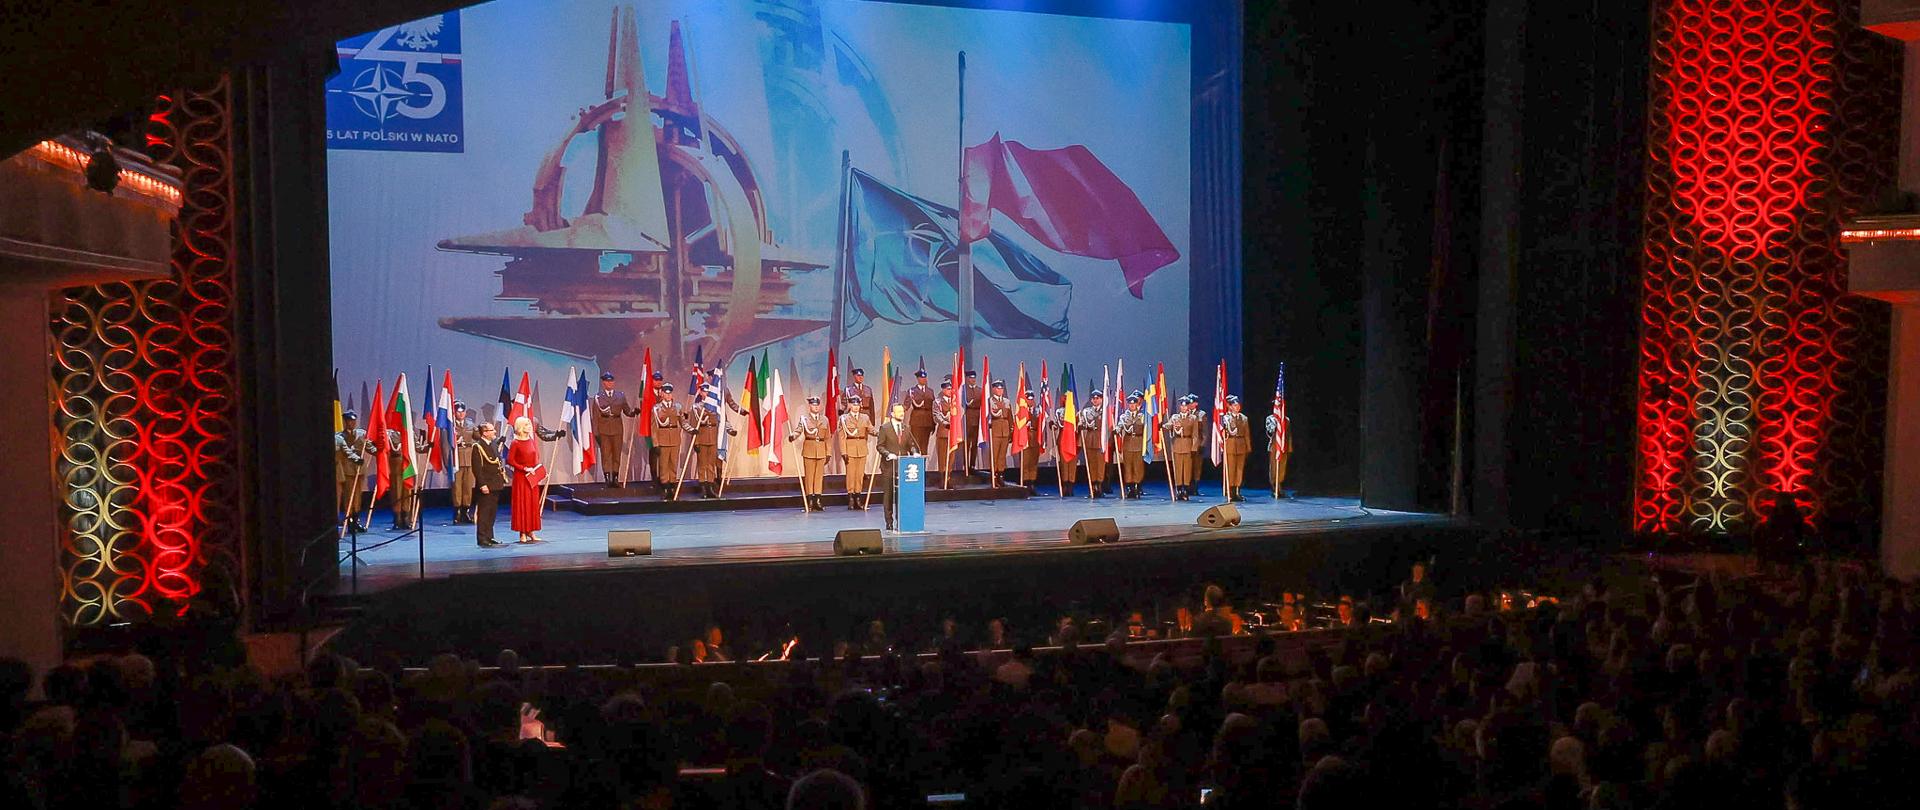 16 marca 2024 r. w Teatrze Wielkim – Operze Narodowej w Warszawie odbyła się Gala z okazji 25. rocznicy wstąpienia Polski do NATO, w trakcie której uhonorowano osoby najbardziej zasłużonych dla procesu akcesji i członkostwa Polski w Sojuszu Północnoatlantyckim.